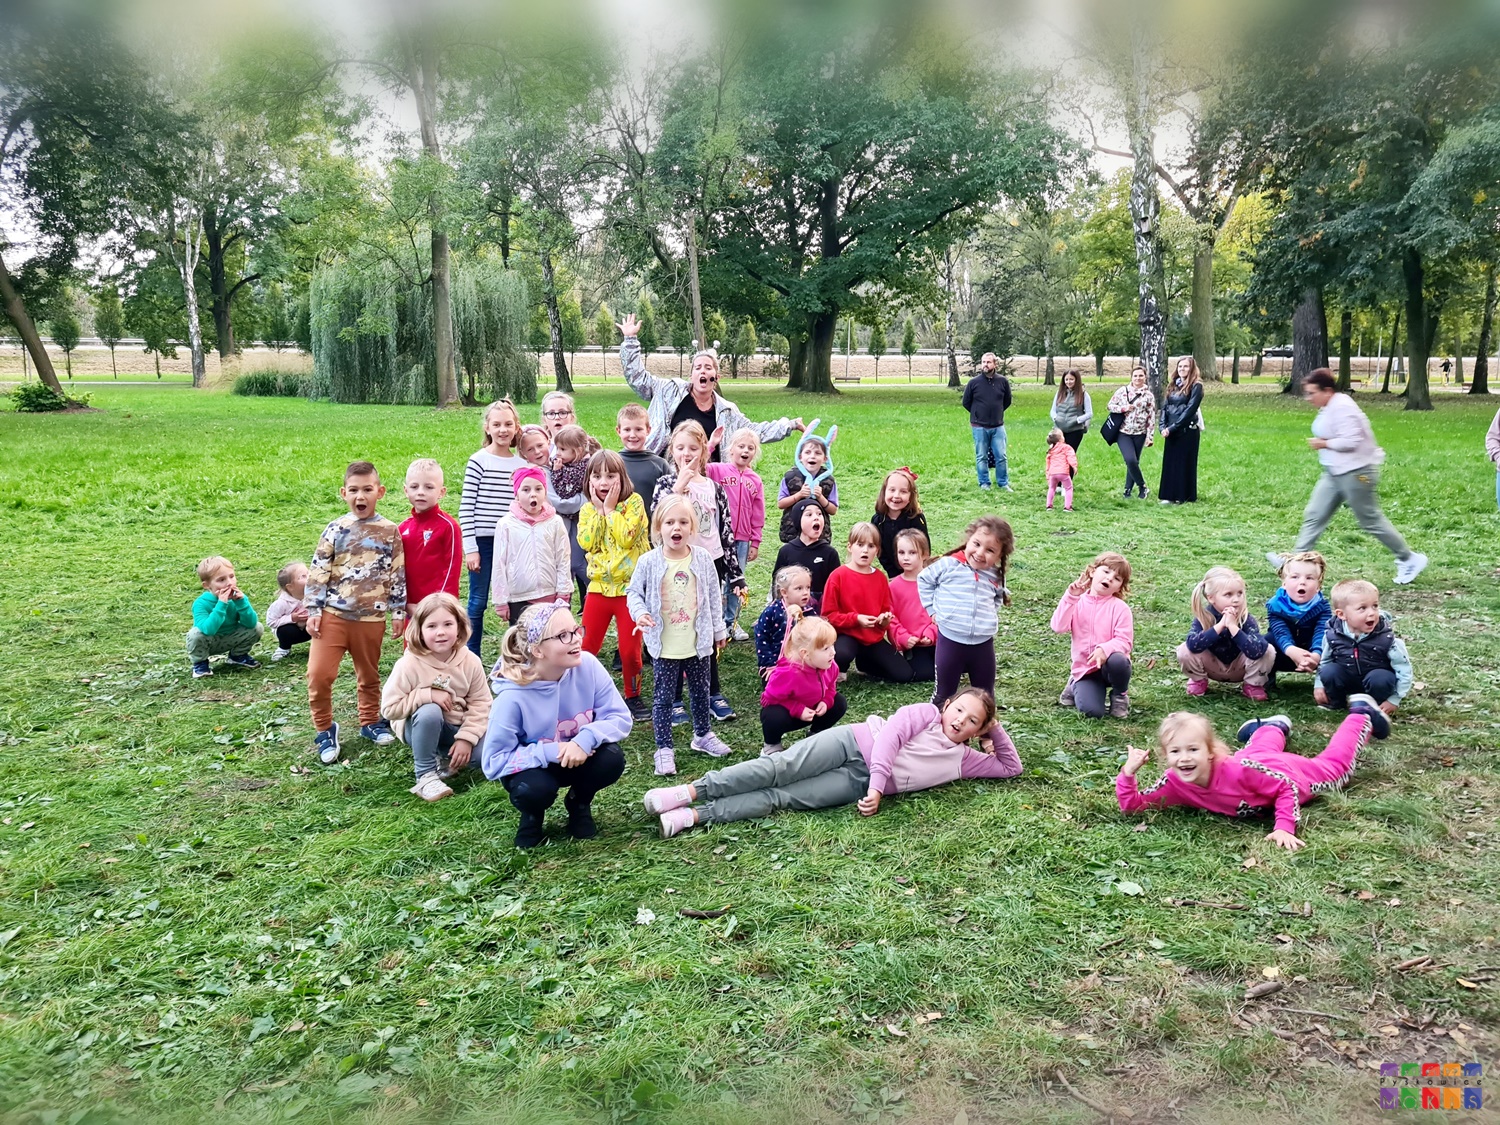 Zdjęcie przedstawiające grupę dzieci siedzących i stojących w parku. W tle widać drzewa parkowe.